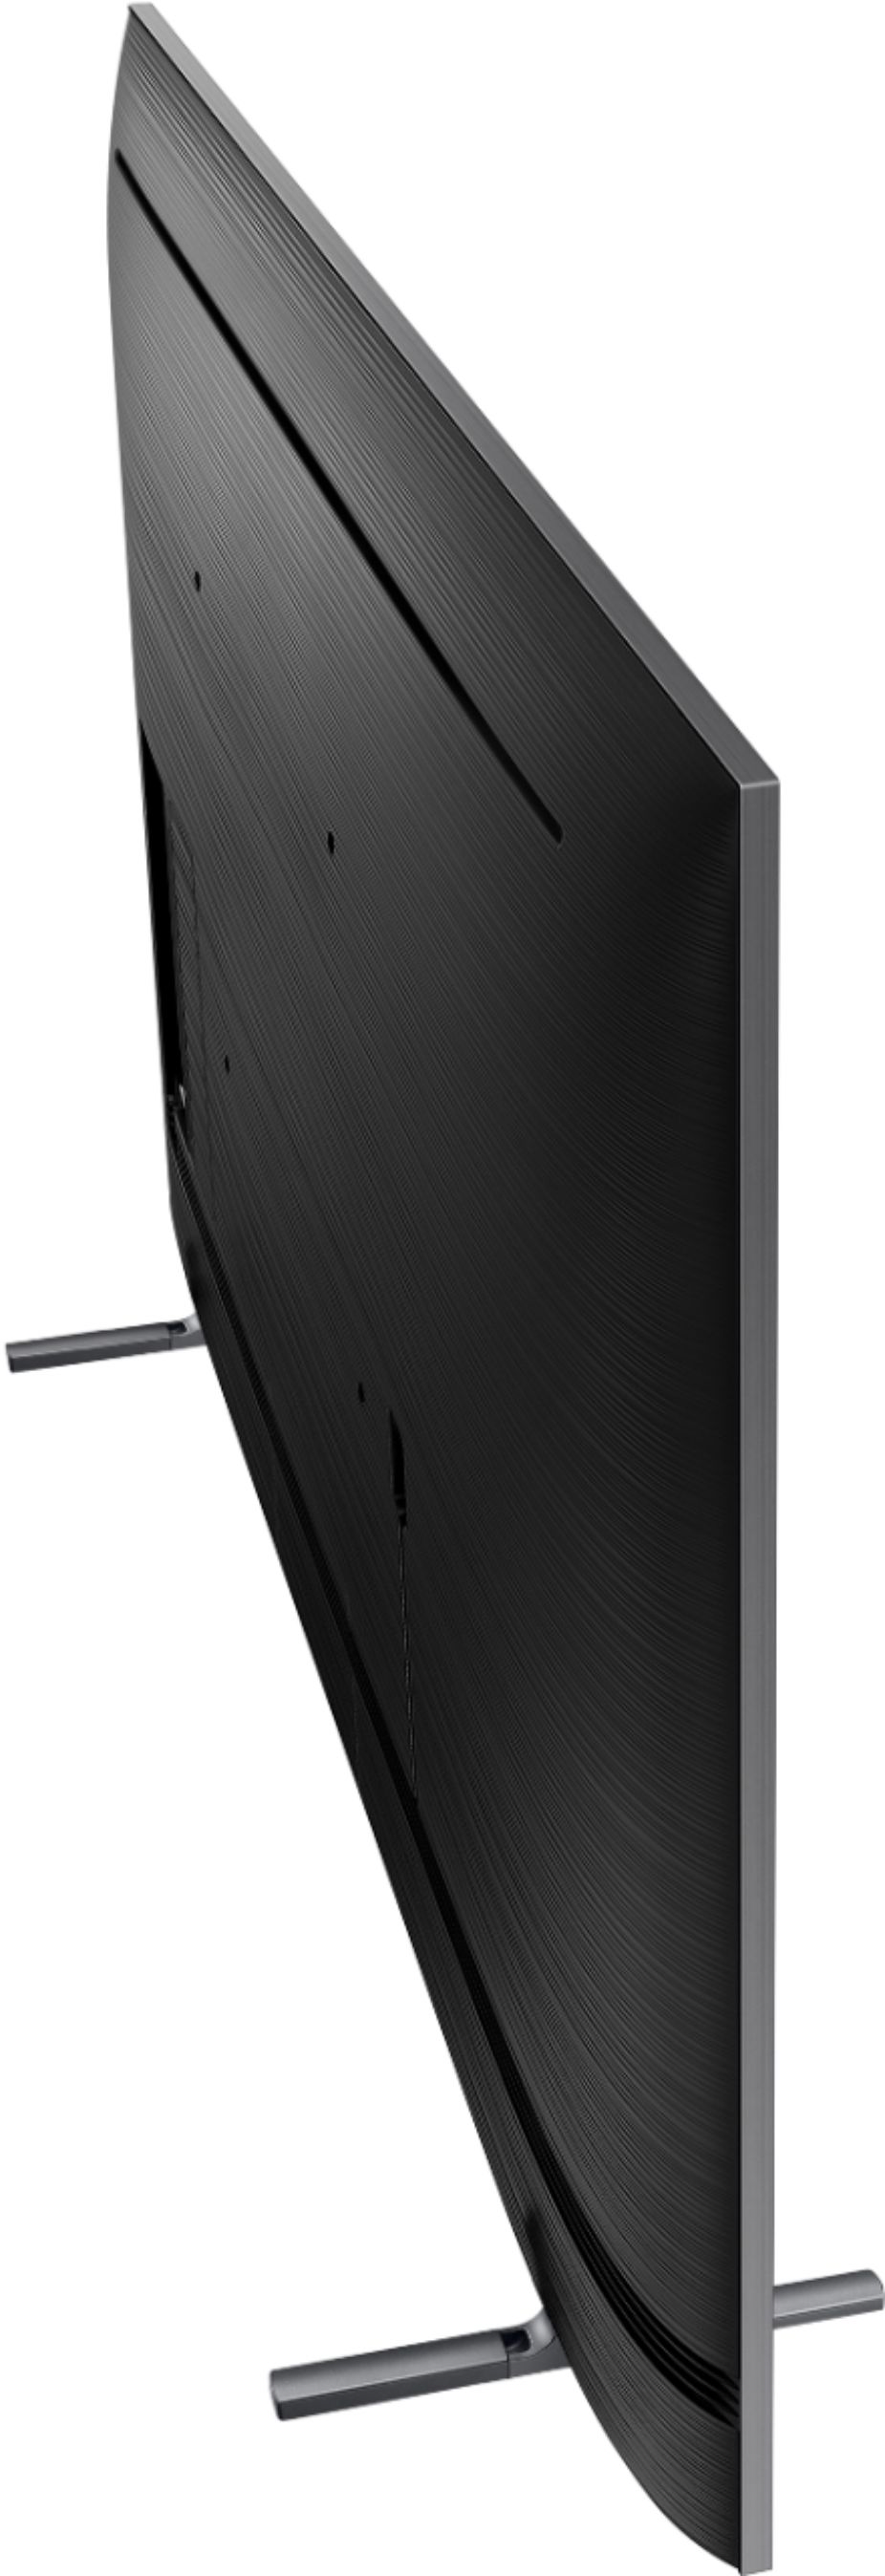 SAMSUNG Serie QLED Q80A de 55 pulgadas - Televisor inteligente